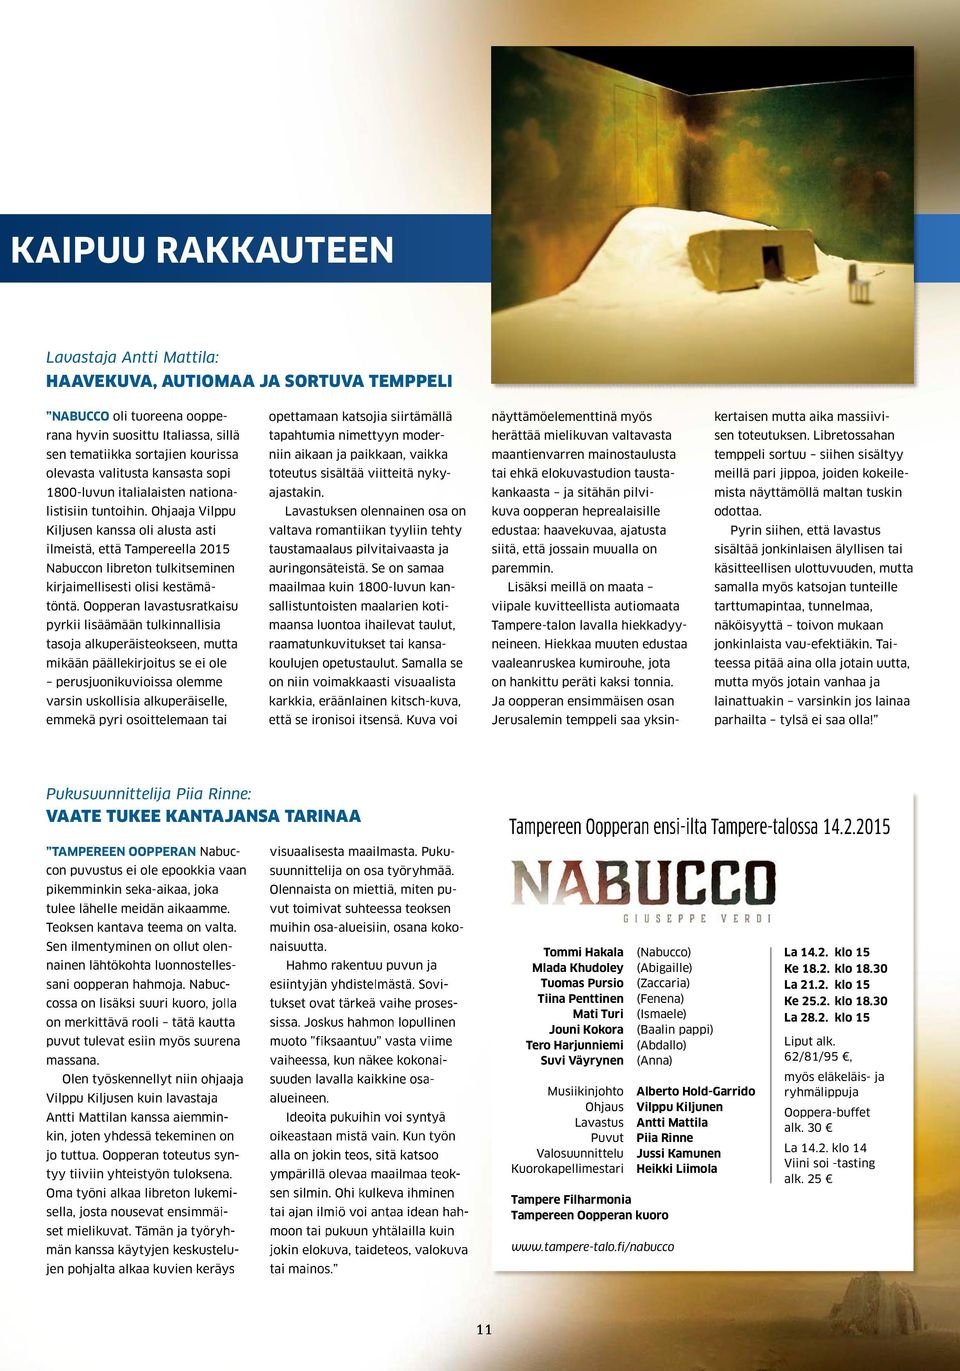 Ohjaaja Vilppu Kiljusen kanssa oli alusta asti ilmeistä, että Tampereella 2015 Nabuccon libreton tulkitseminen kirjaimellisesti olisi kestämätöntä.